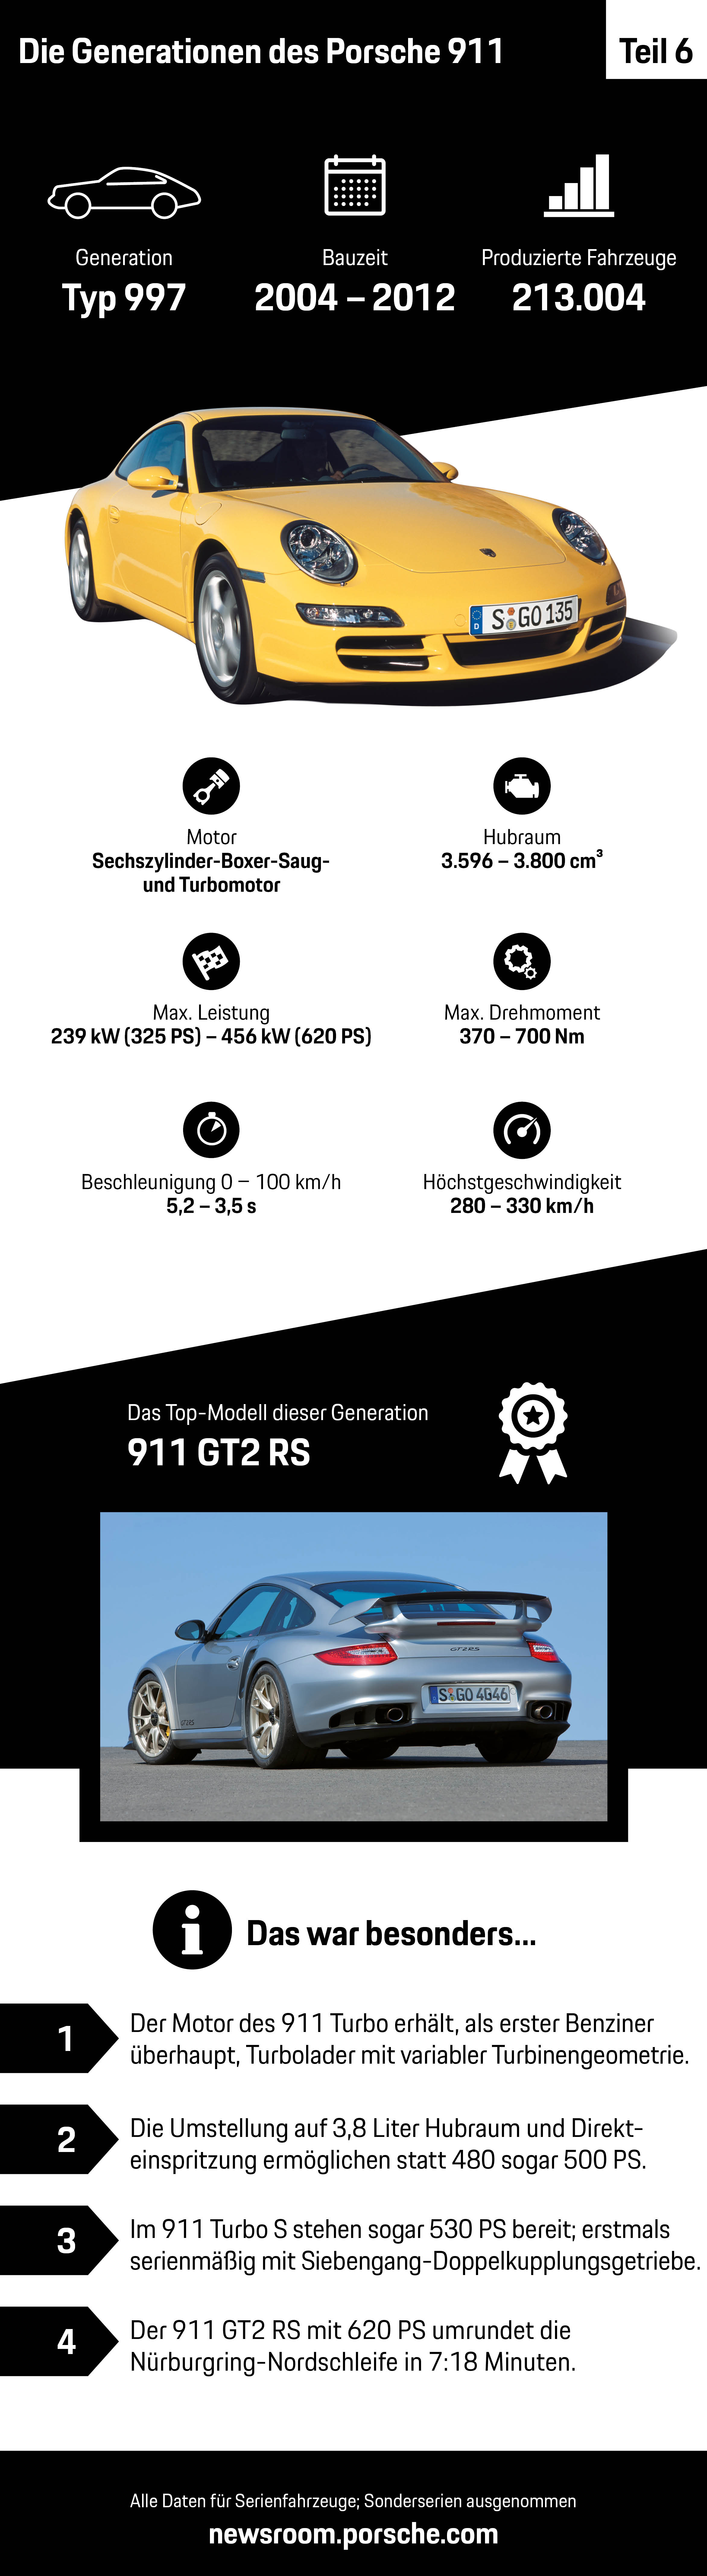 Die Generationen des Porsche 911 – Teil 6, Infografik, 2018, Porsche AG